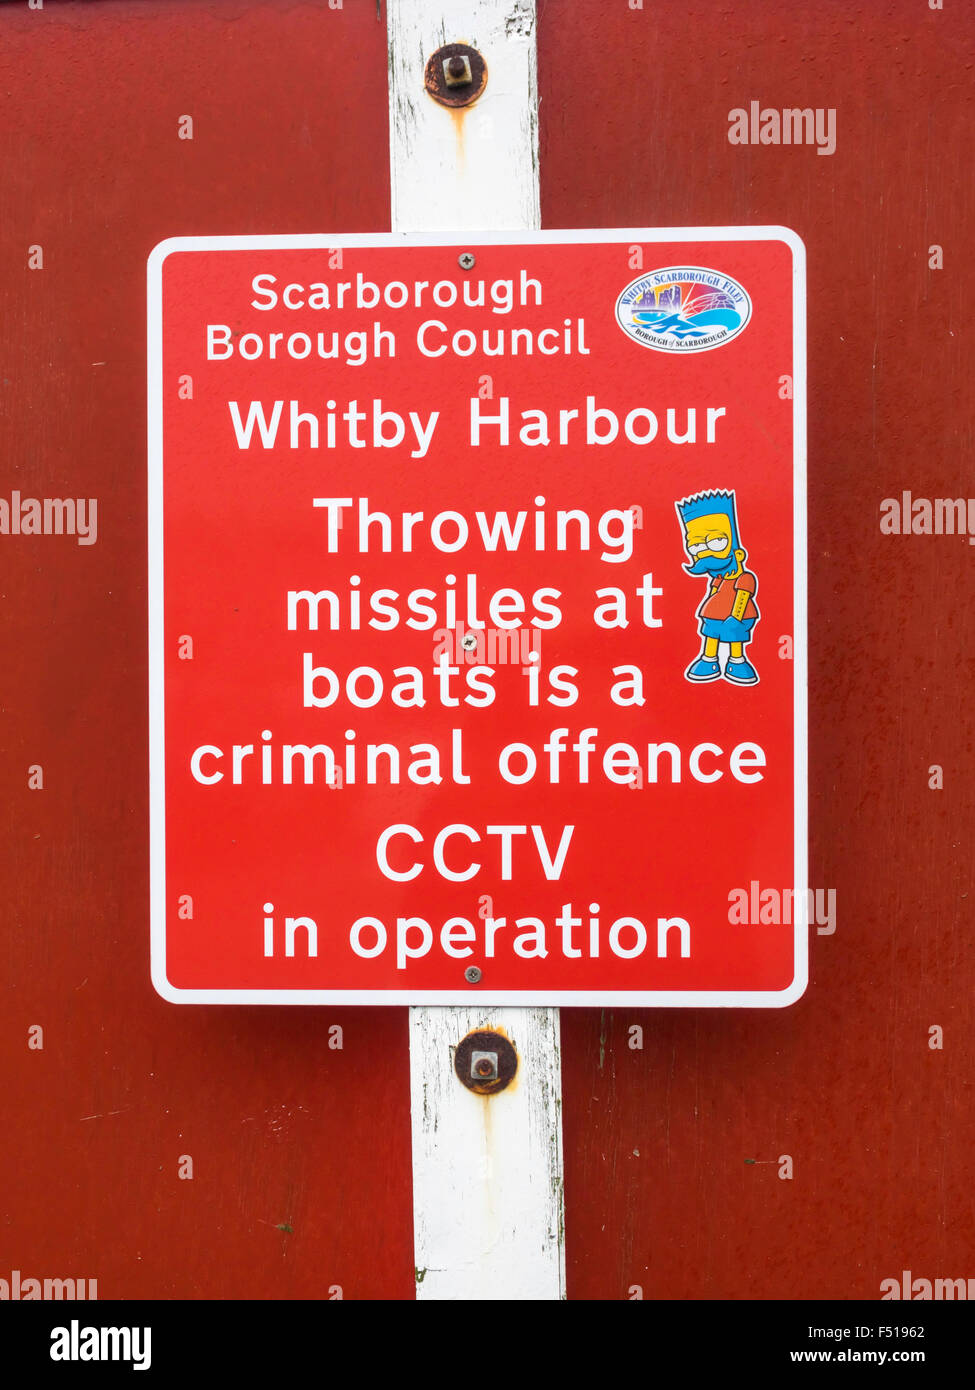 Scarborough Borough Council Warnsignal bei Whitby Hafen werfen Raketen auf Boote ist eine strafbare Handlung CCTV in Betrieb Stockfoto